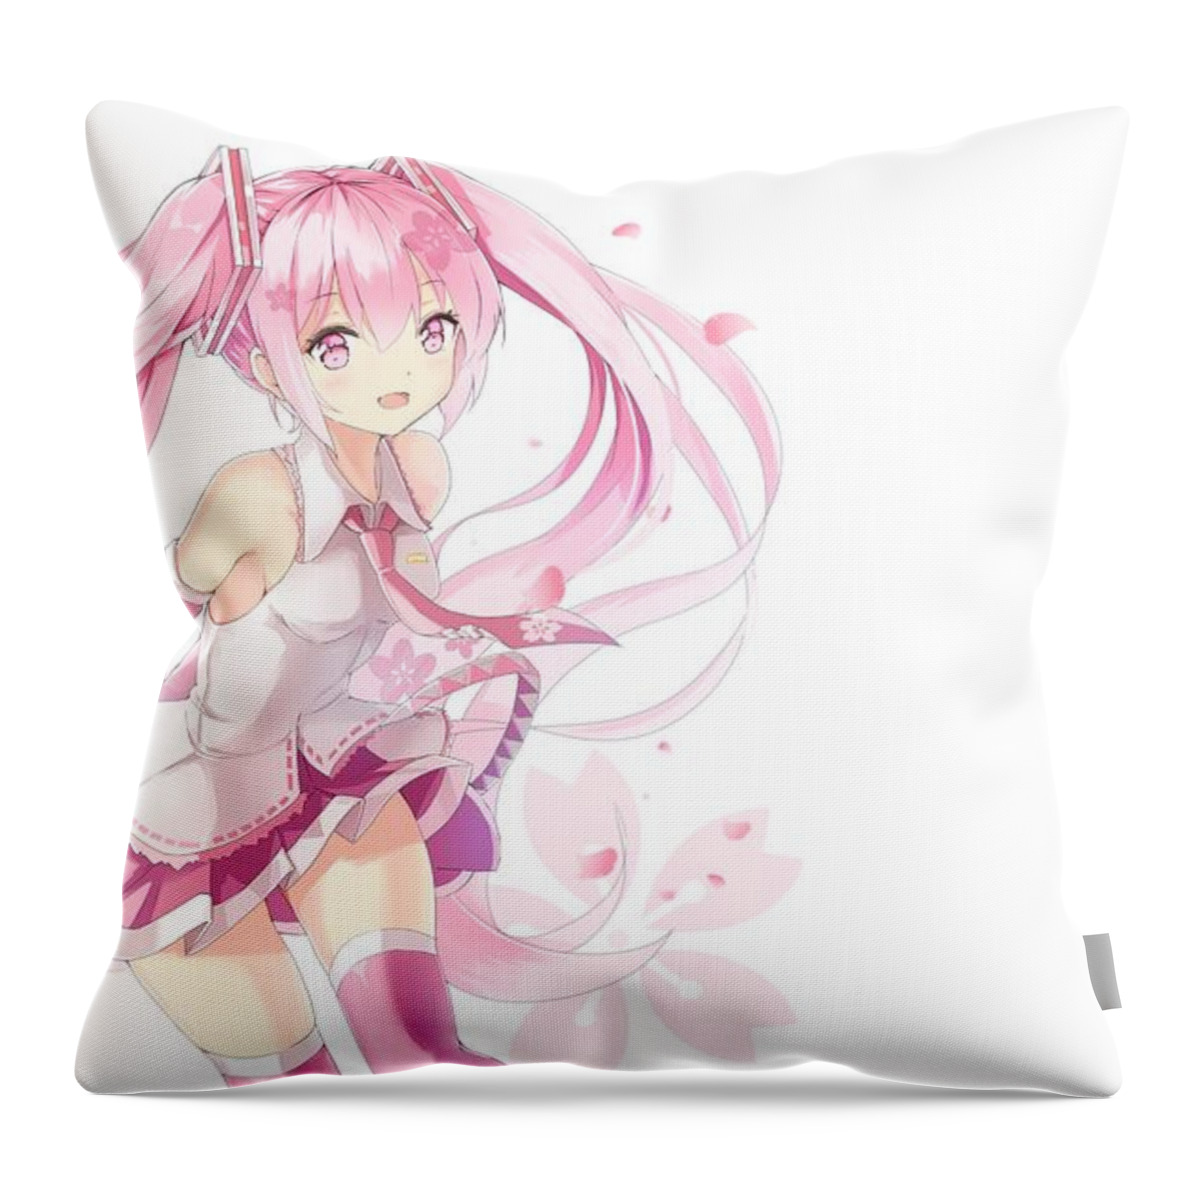 Vocaloid Throw Pillow featuring the digital art Vocaloid by Maye Loeser